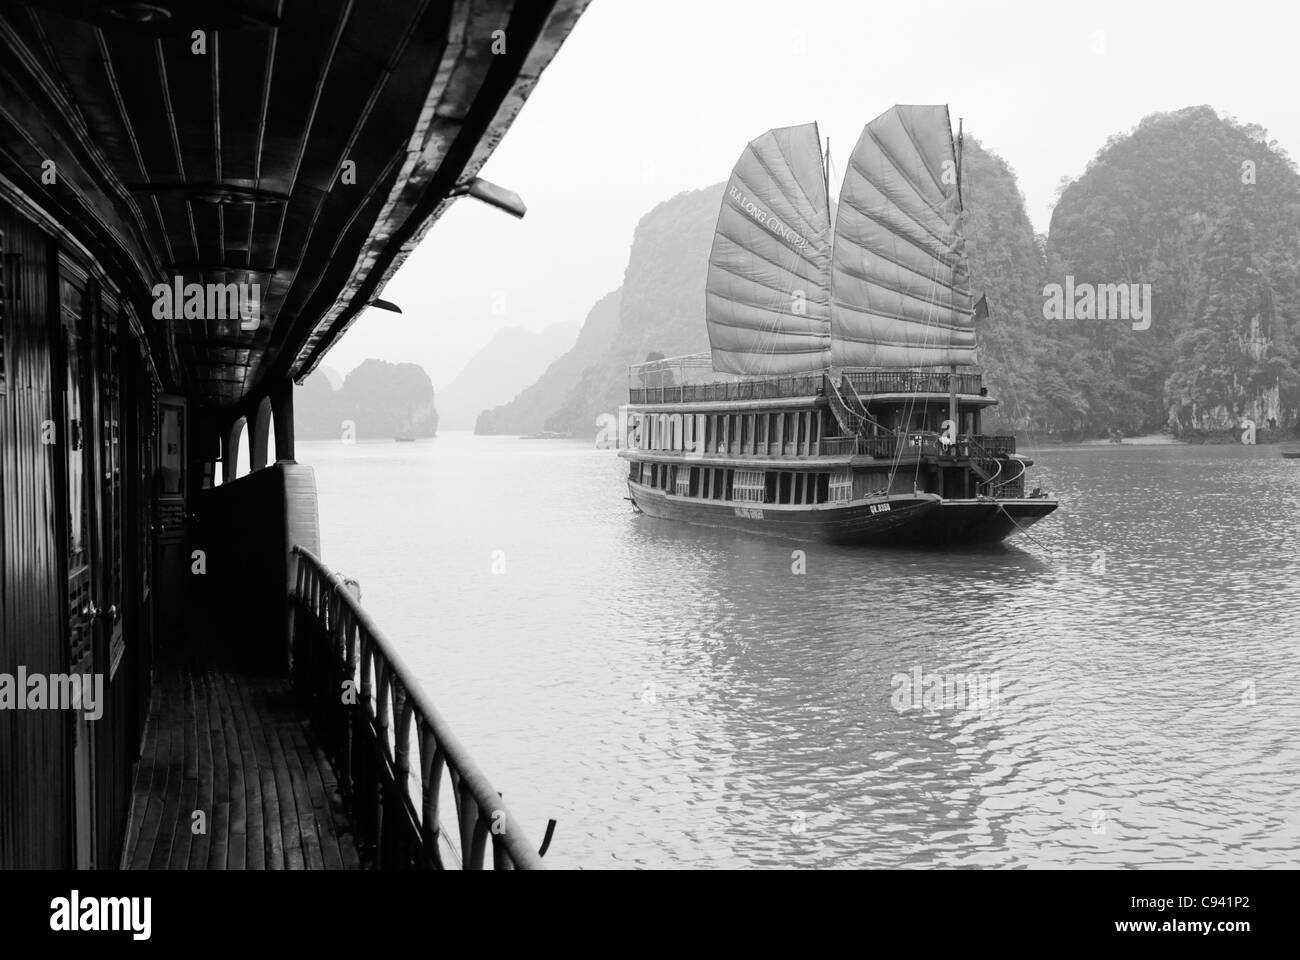 Asien, Vietnam, Halong-Bucht. Traditionelles Segeln Trödel auf die Halong-Bucht. Bezeichnet ein UNESCO-Weltkulturerbe im Jahr 1994, die... Stockfoto